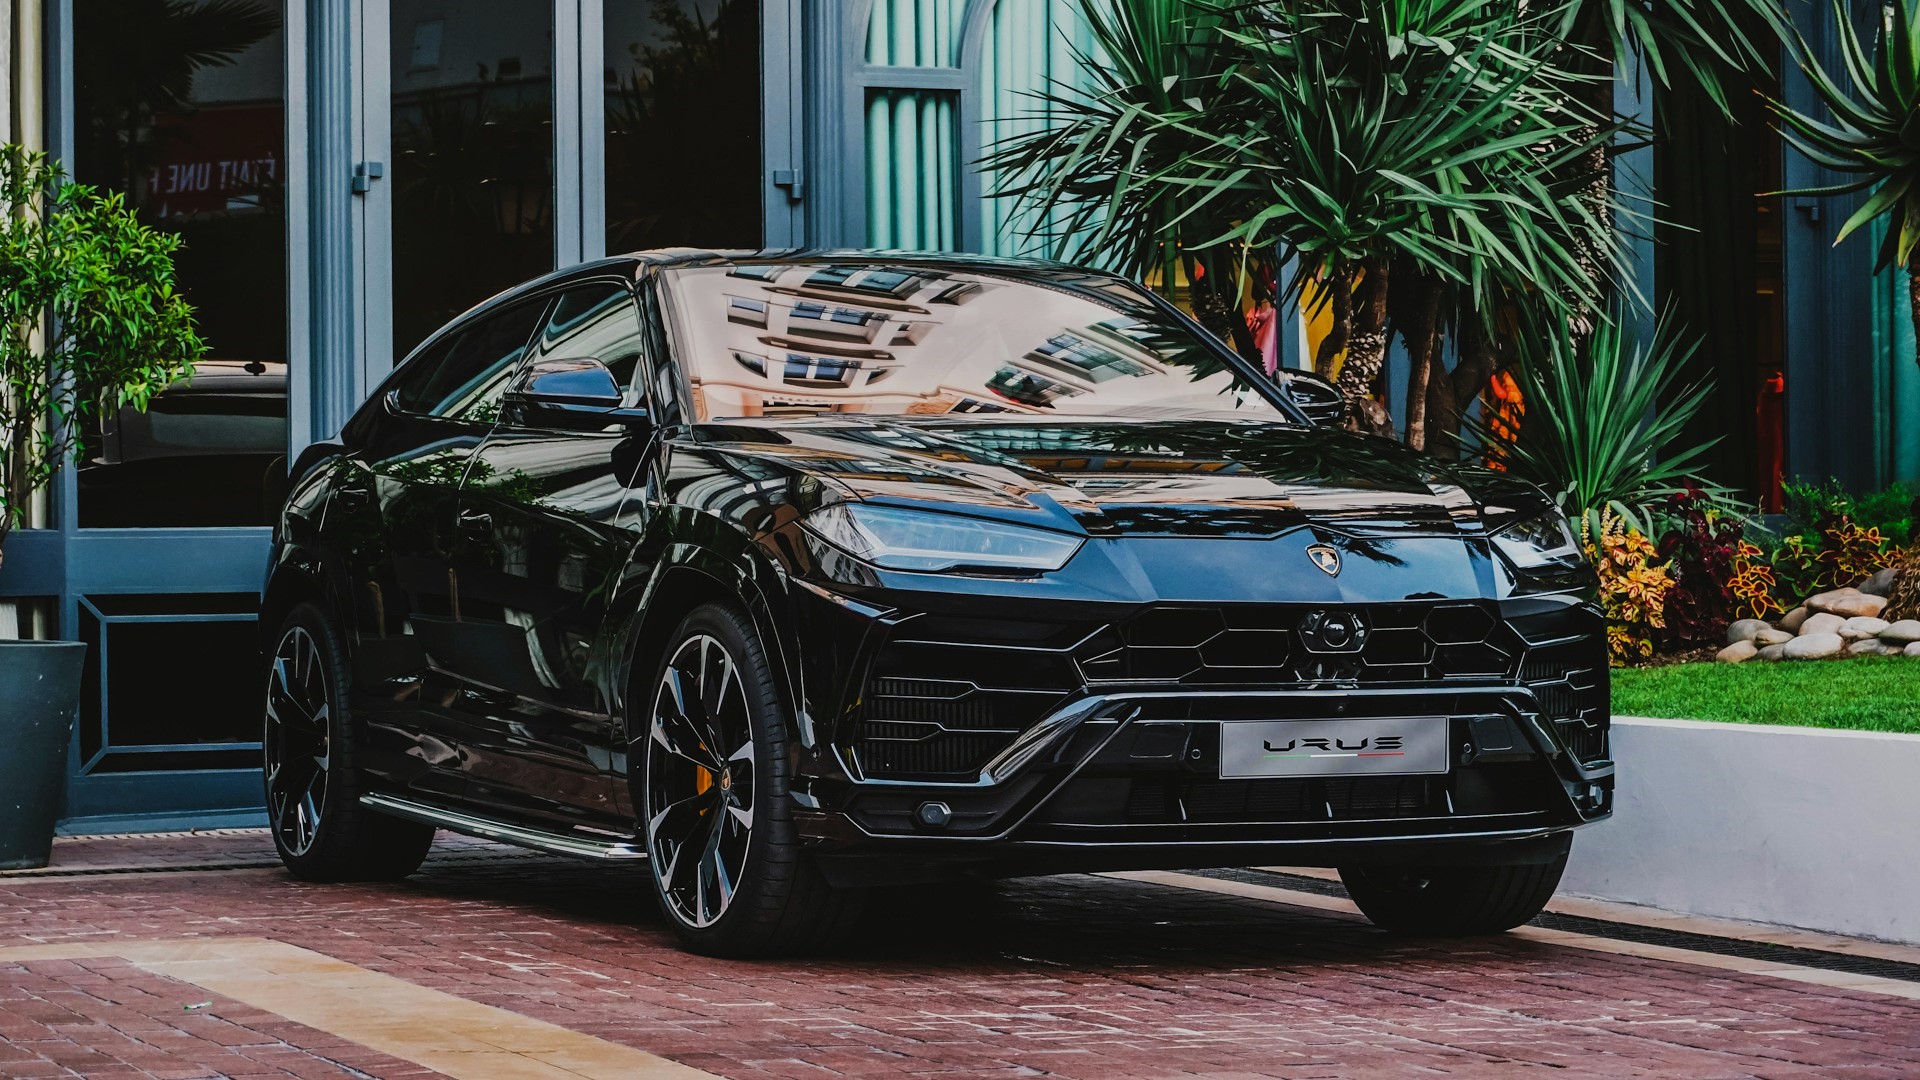 Lamborghini Urus 1